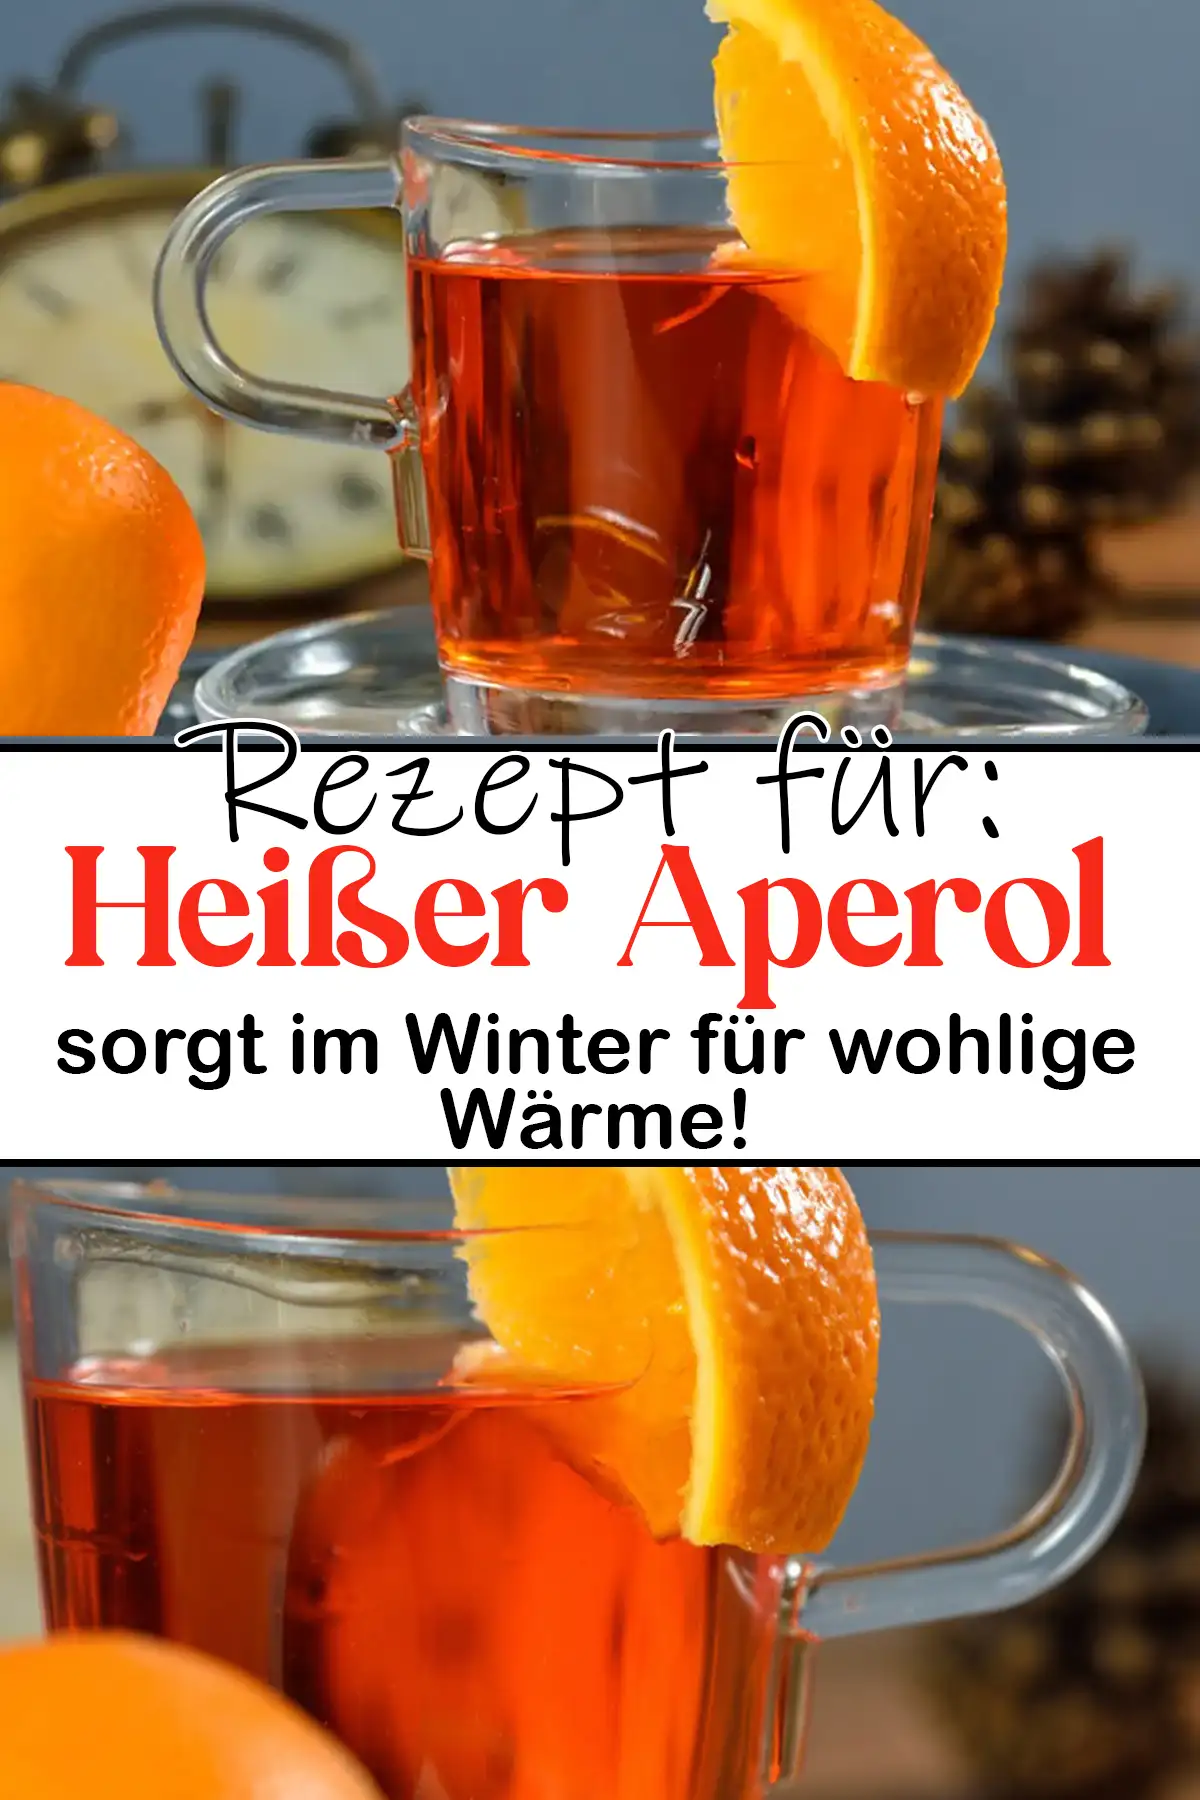 Heißer Aperol, sorgt im Winter für wohlige Wärme!